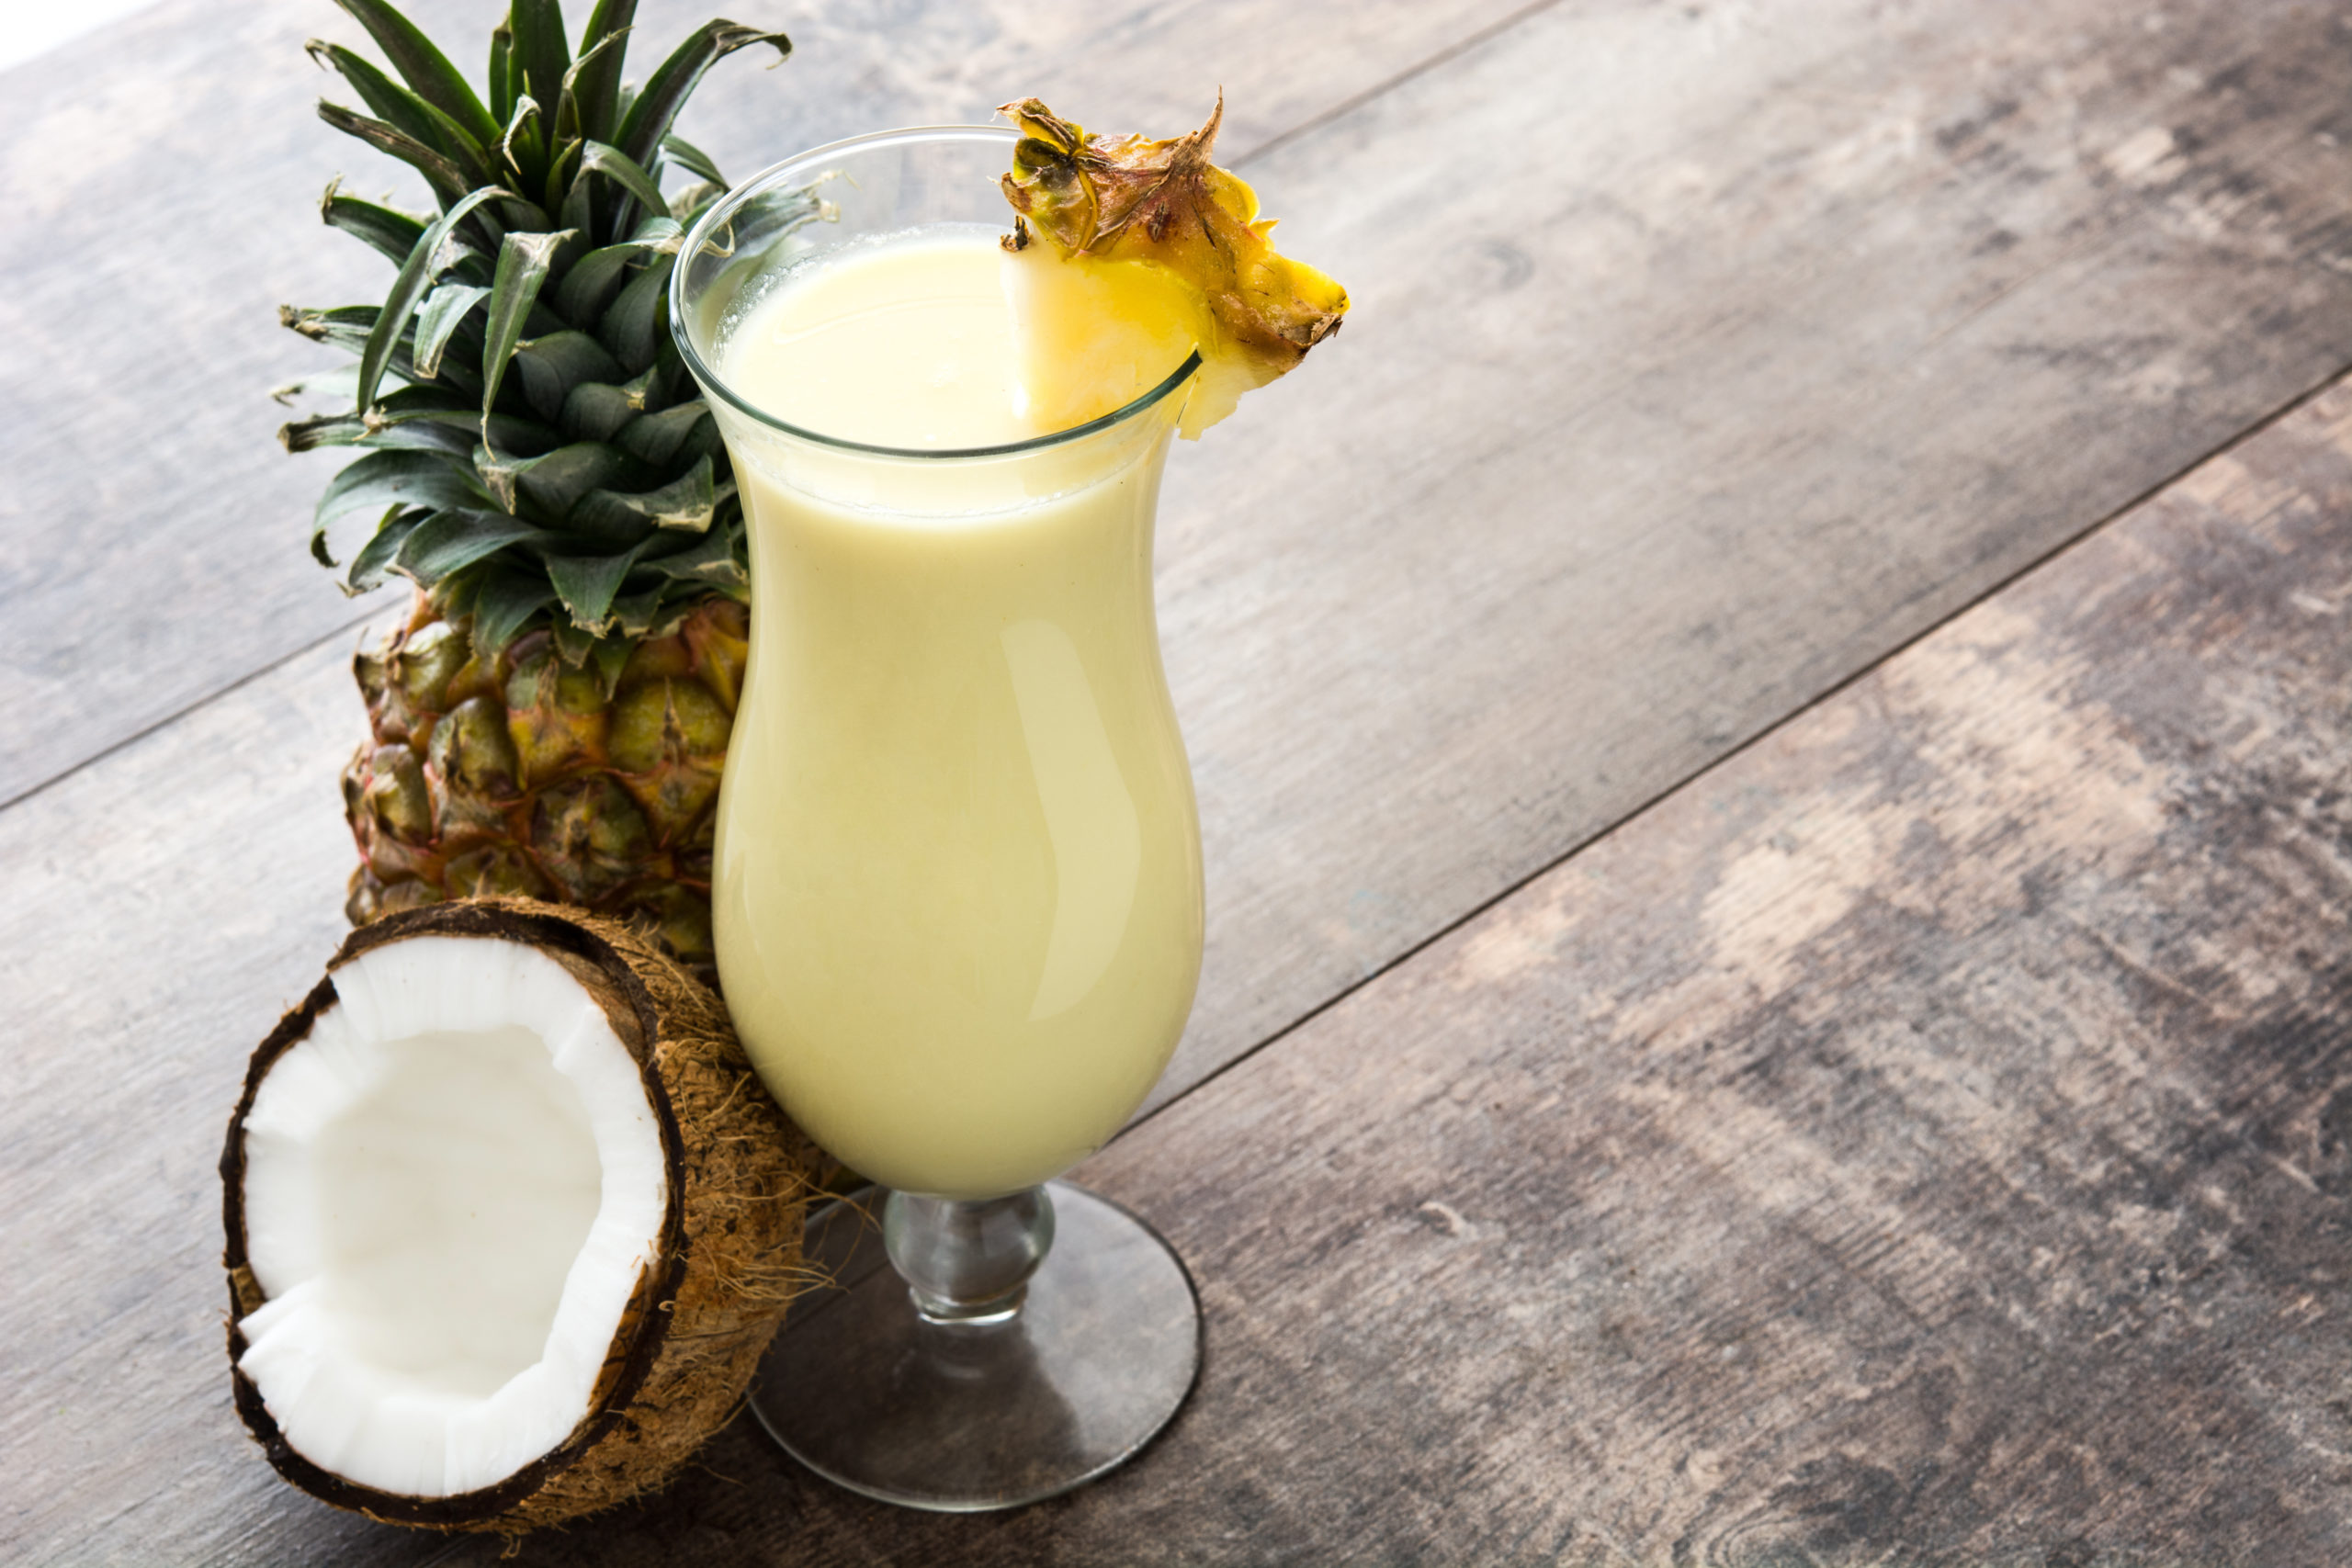 Готовый коктейль вылейте в бокал, украсьте стручками ванили и кружочком ананаса. Впрочем, украшать можно на свой вкус, например, отлично подойдет кокосовая стружка.